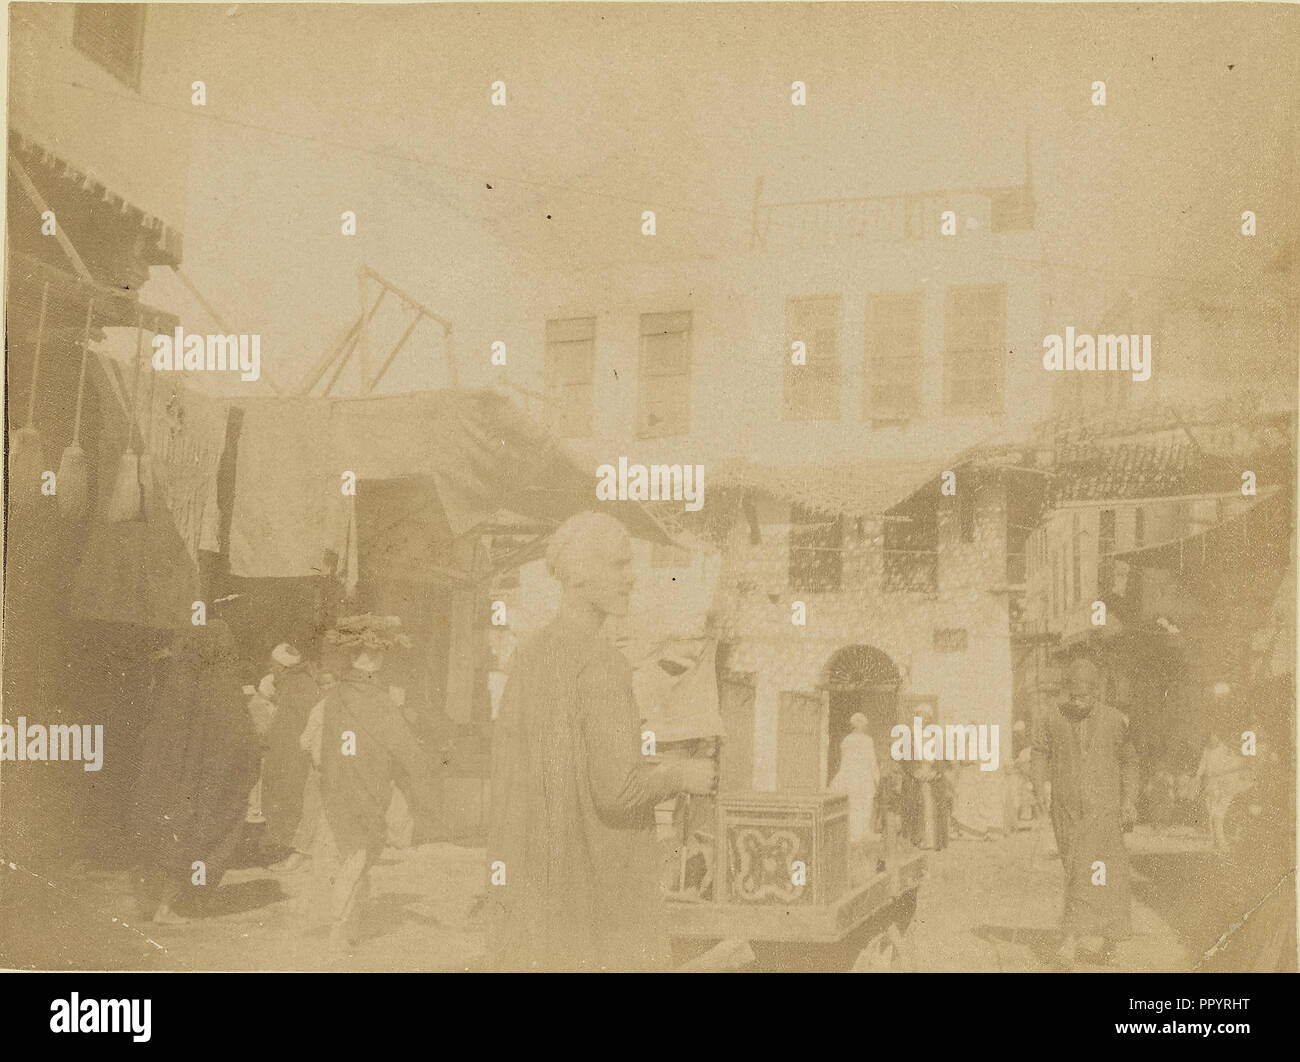 Mercado; 1860 - 1880; Albúmina tintado imprimir plata Foto de stock